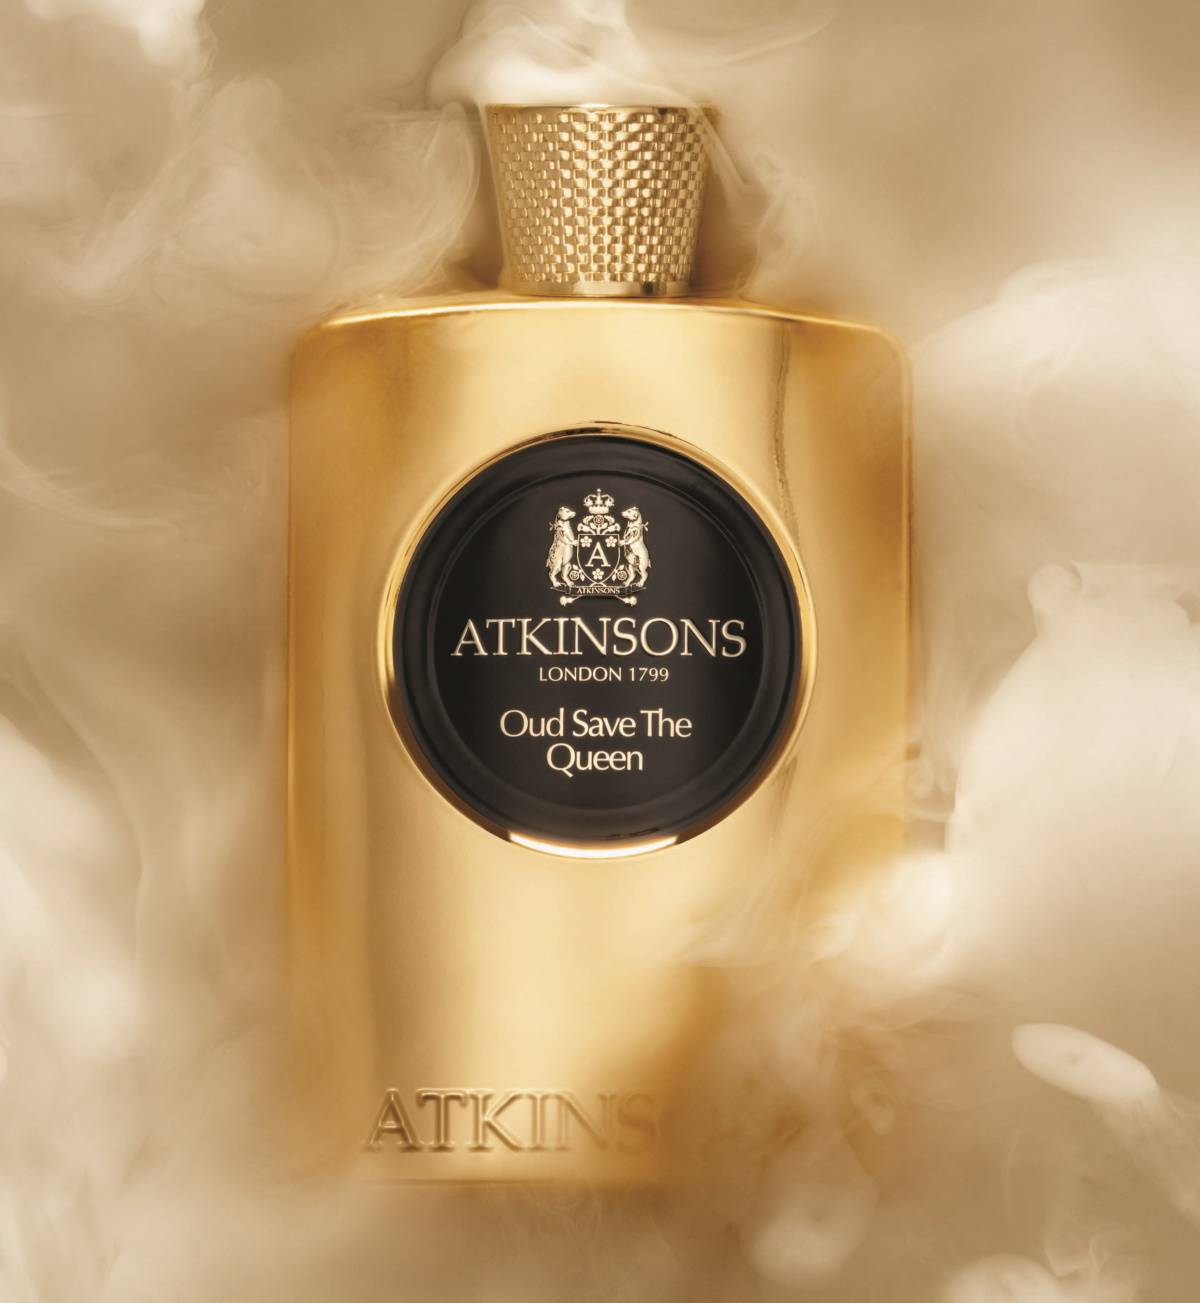 Atkinsons: Perfumy z królewskiego dworu. Z okazji premiery nowego zapachu w rodzinie Atkinsons – James – przybliżamy historię perfumeryjnej marki, którą pokochali królowie i carowie.